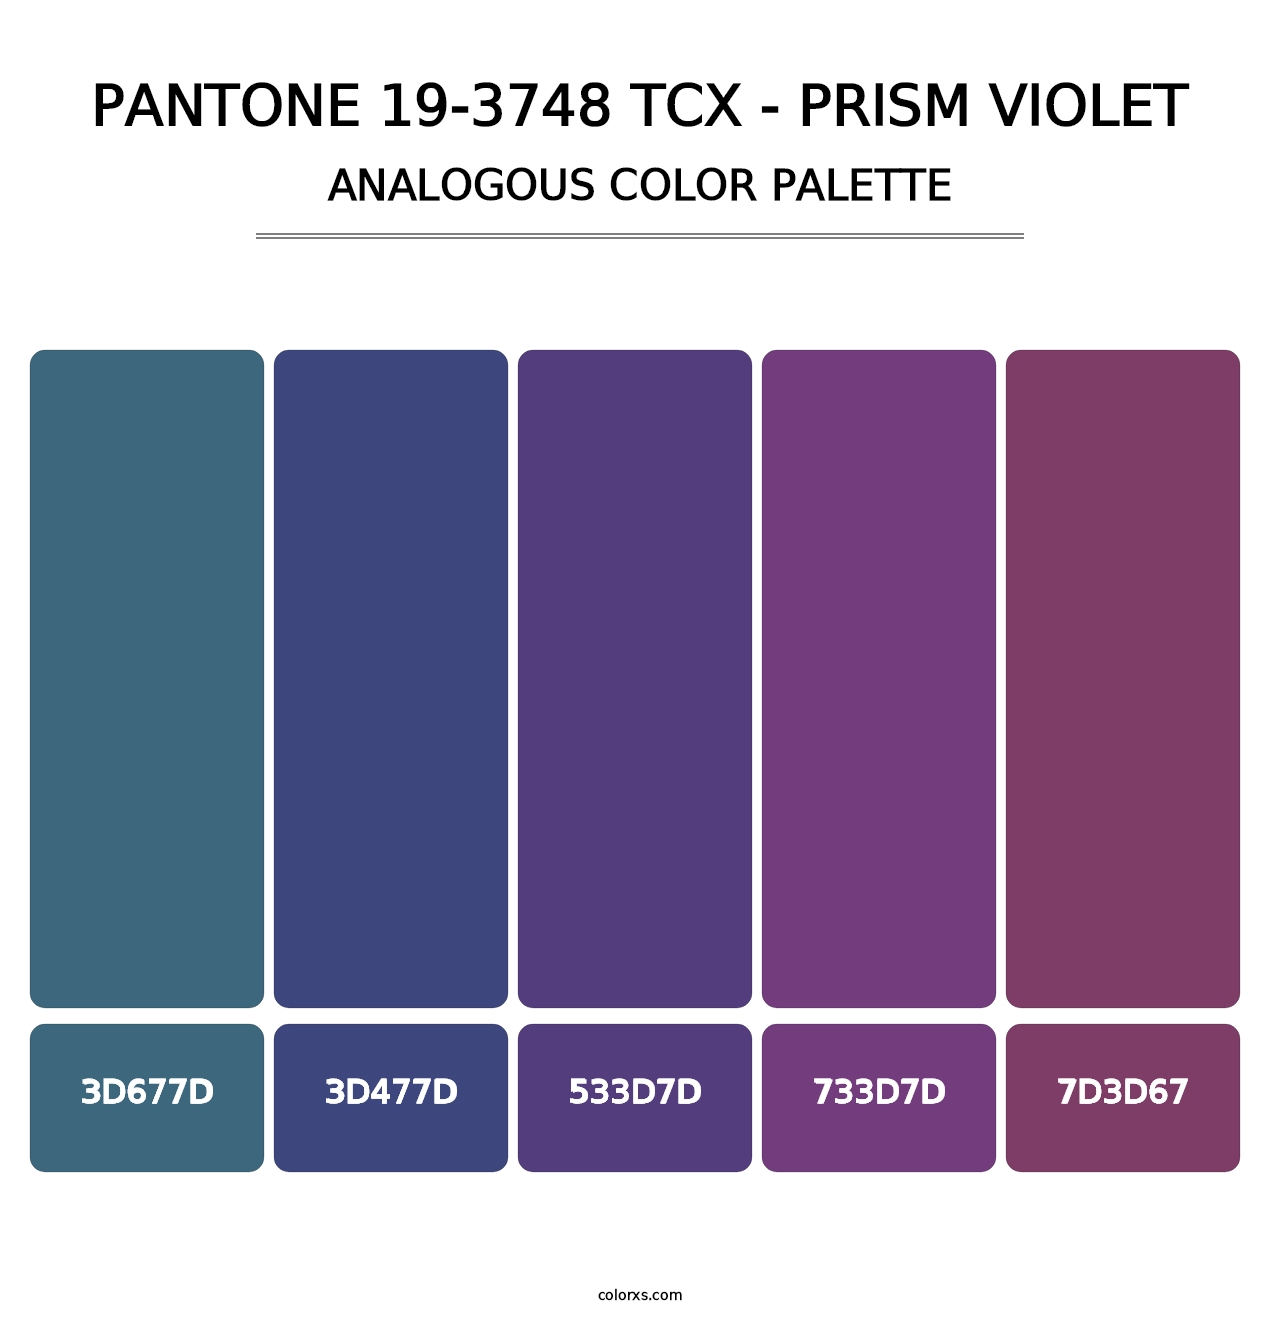 PANTONE 19-3748 TCX - Prism Violet - Analogous Color Palette